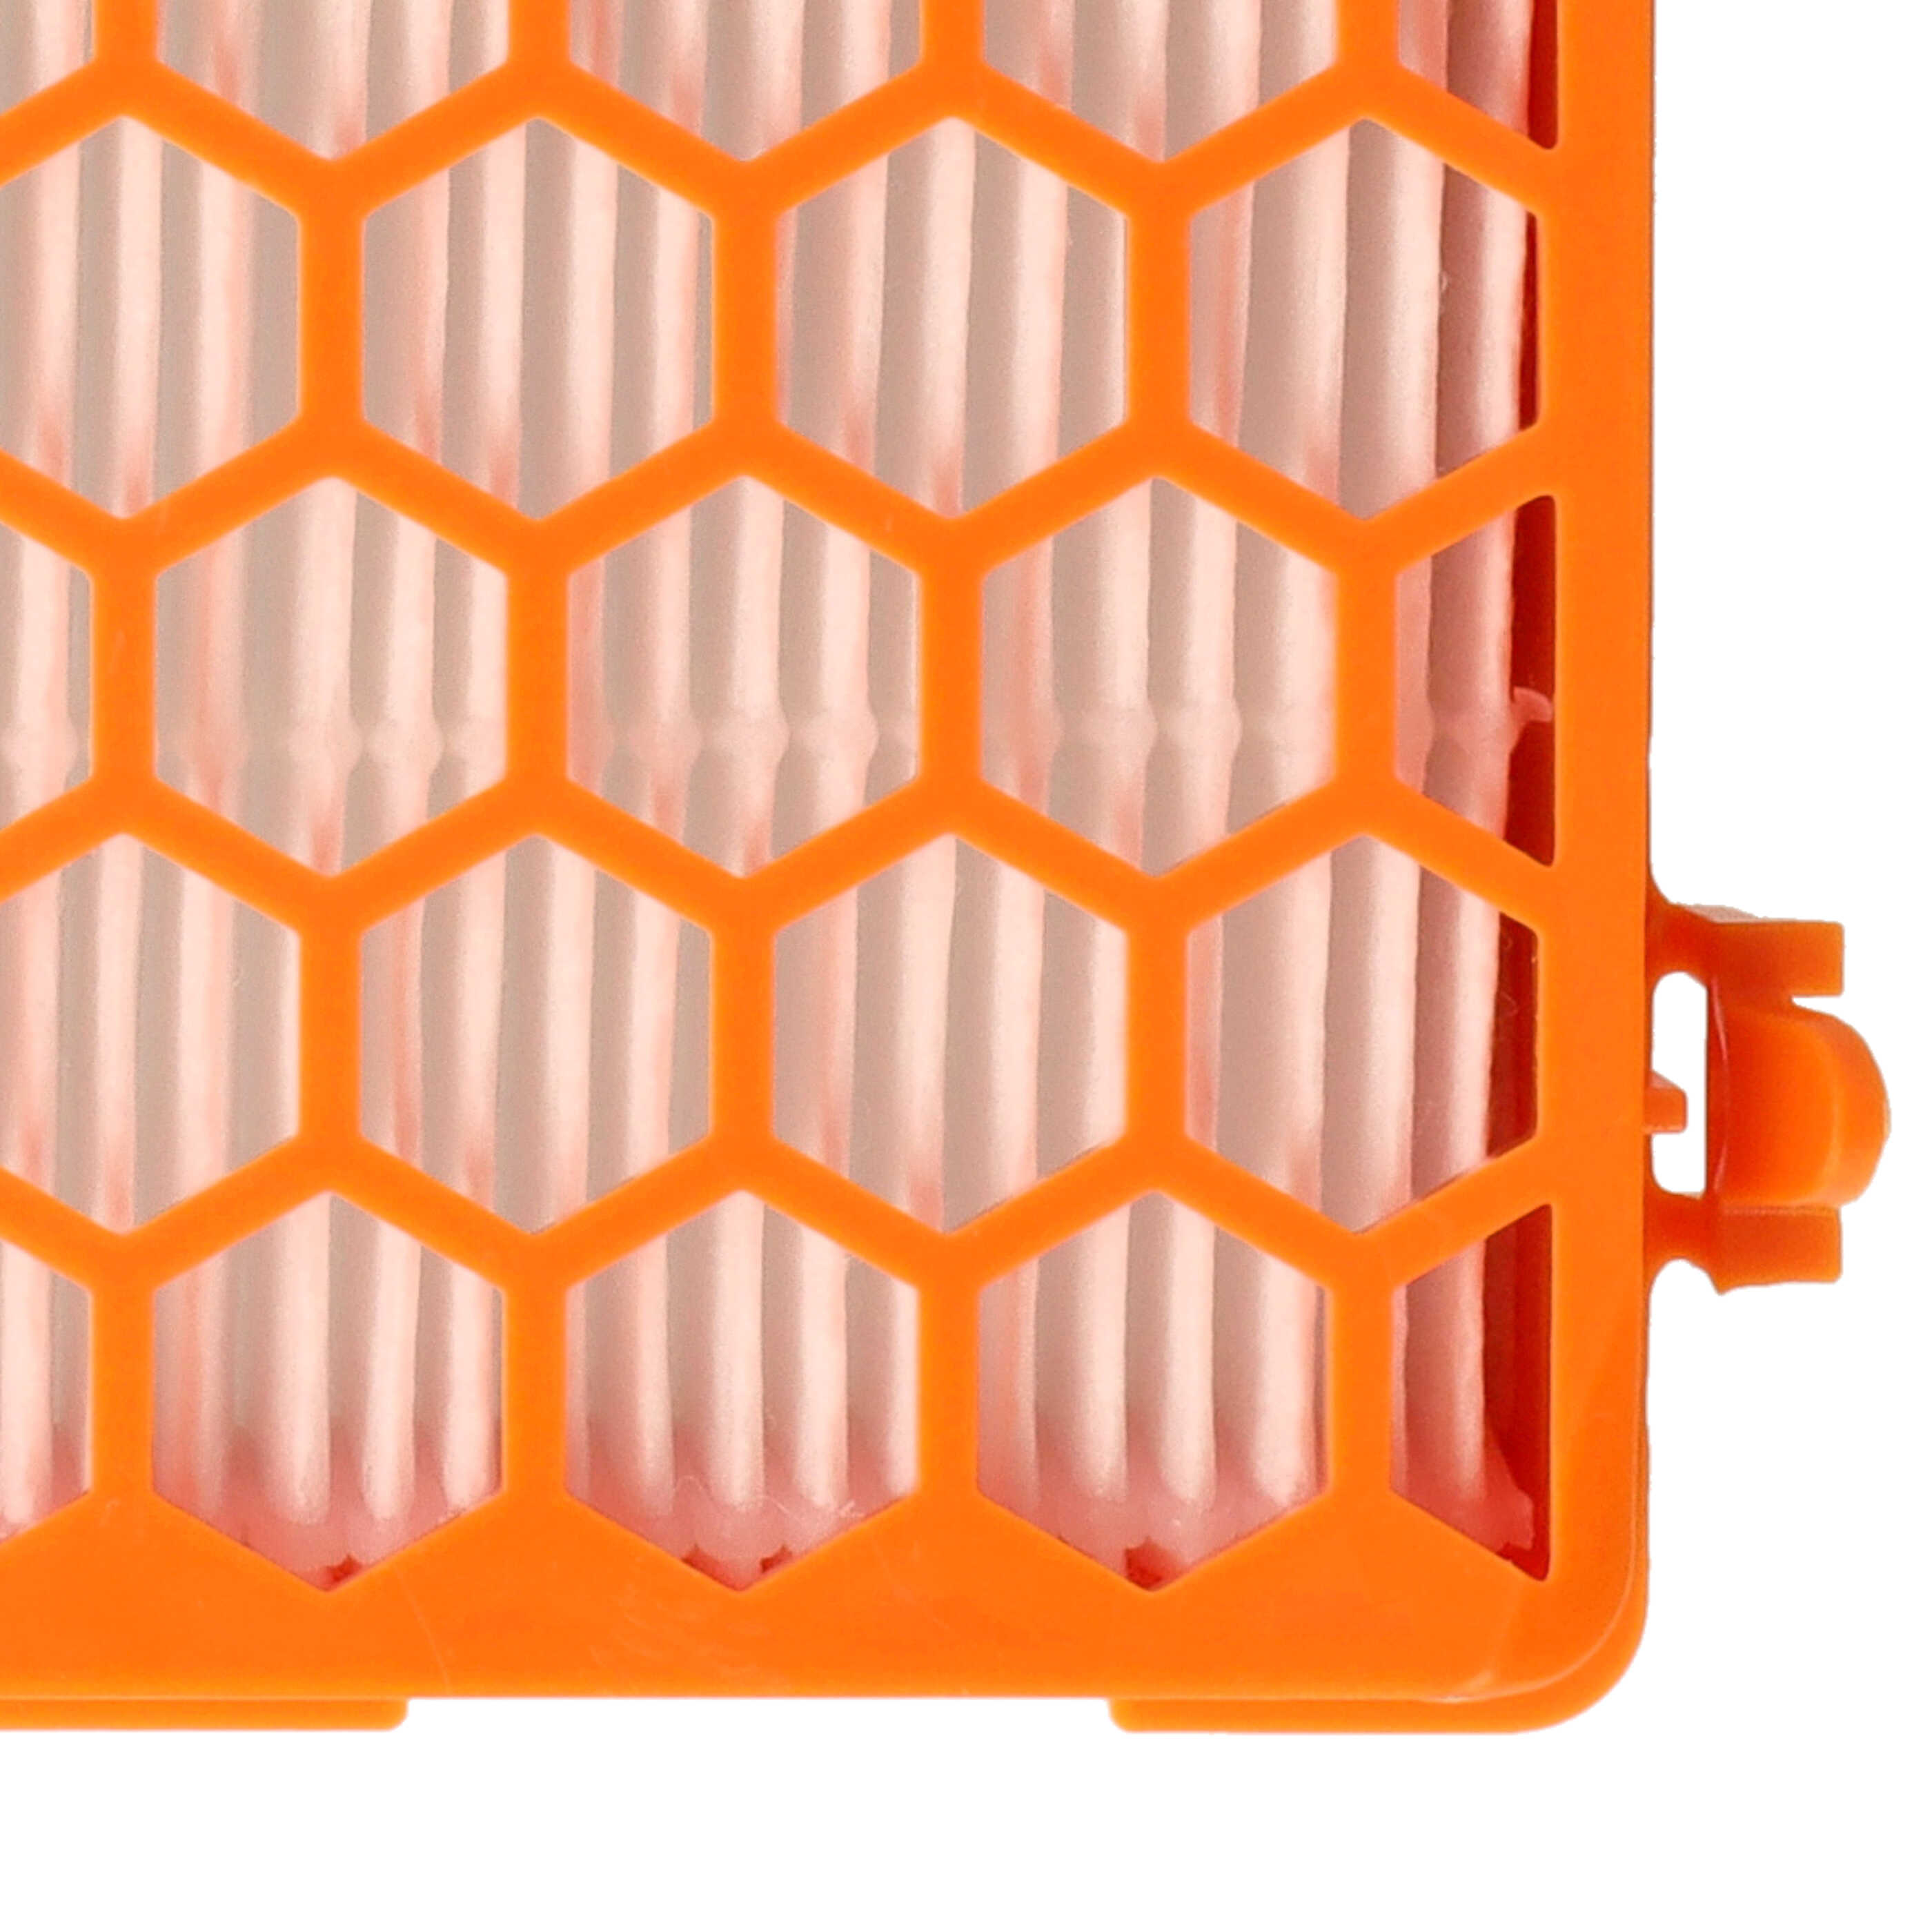 Filtro sostituisce Thomas 787251 per aspirapolvere - filtro HEPA, arancione / bianco